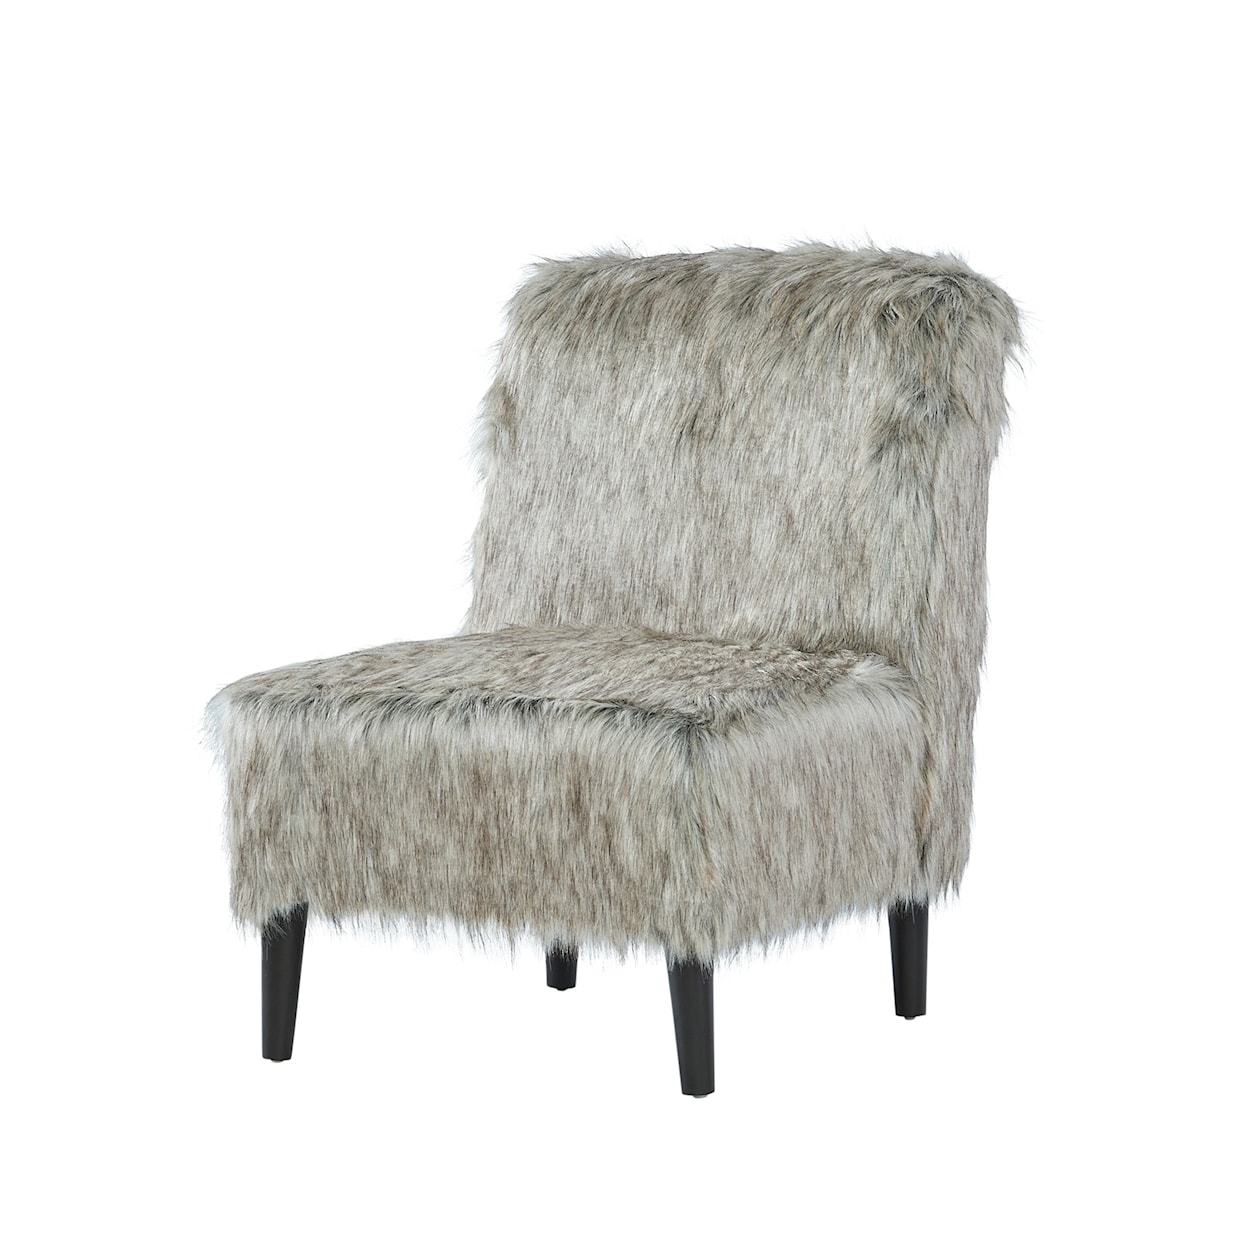 Hughes Furniture 1550 Armless Chair